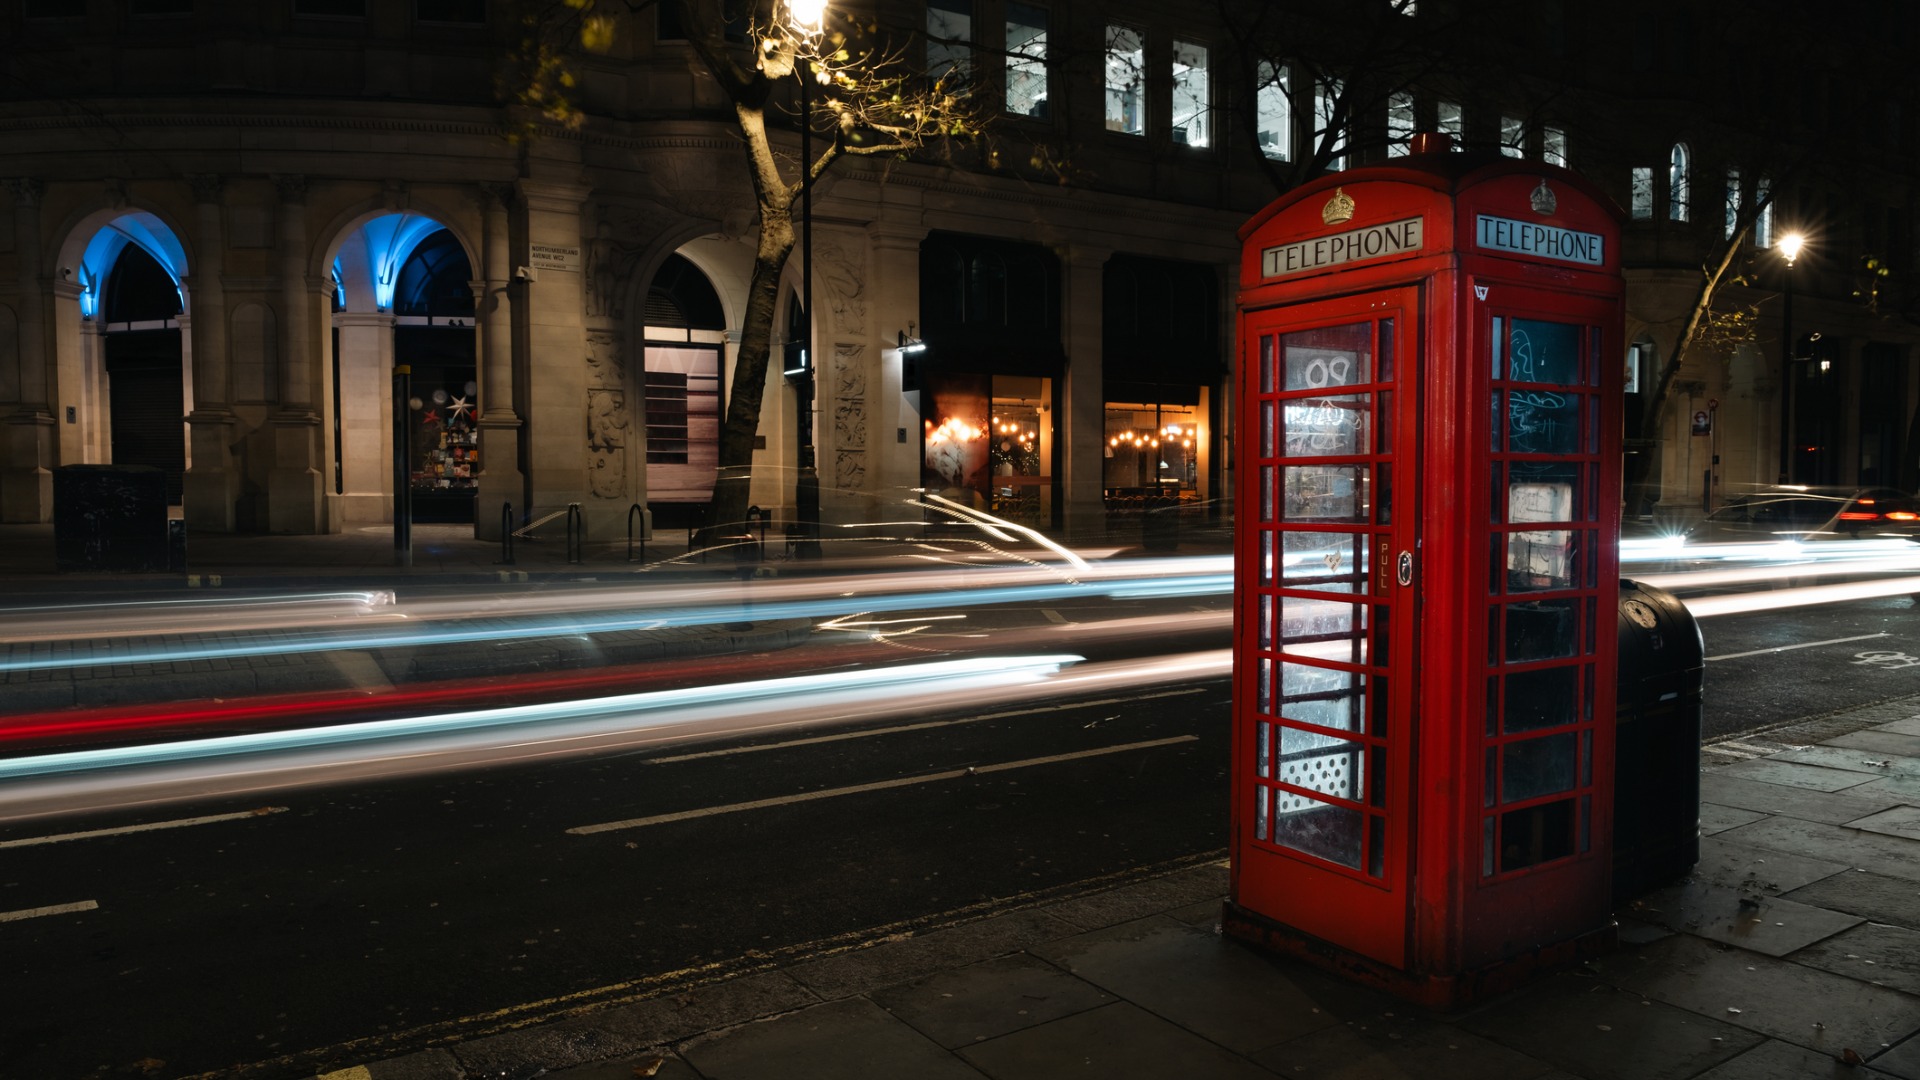 Cabine telefoniche inglesi: la storia di questo emblema